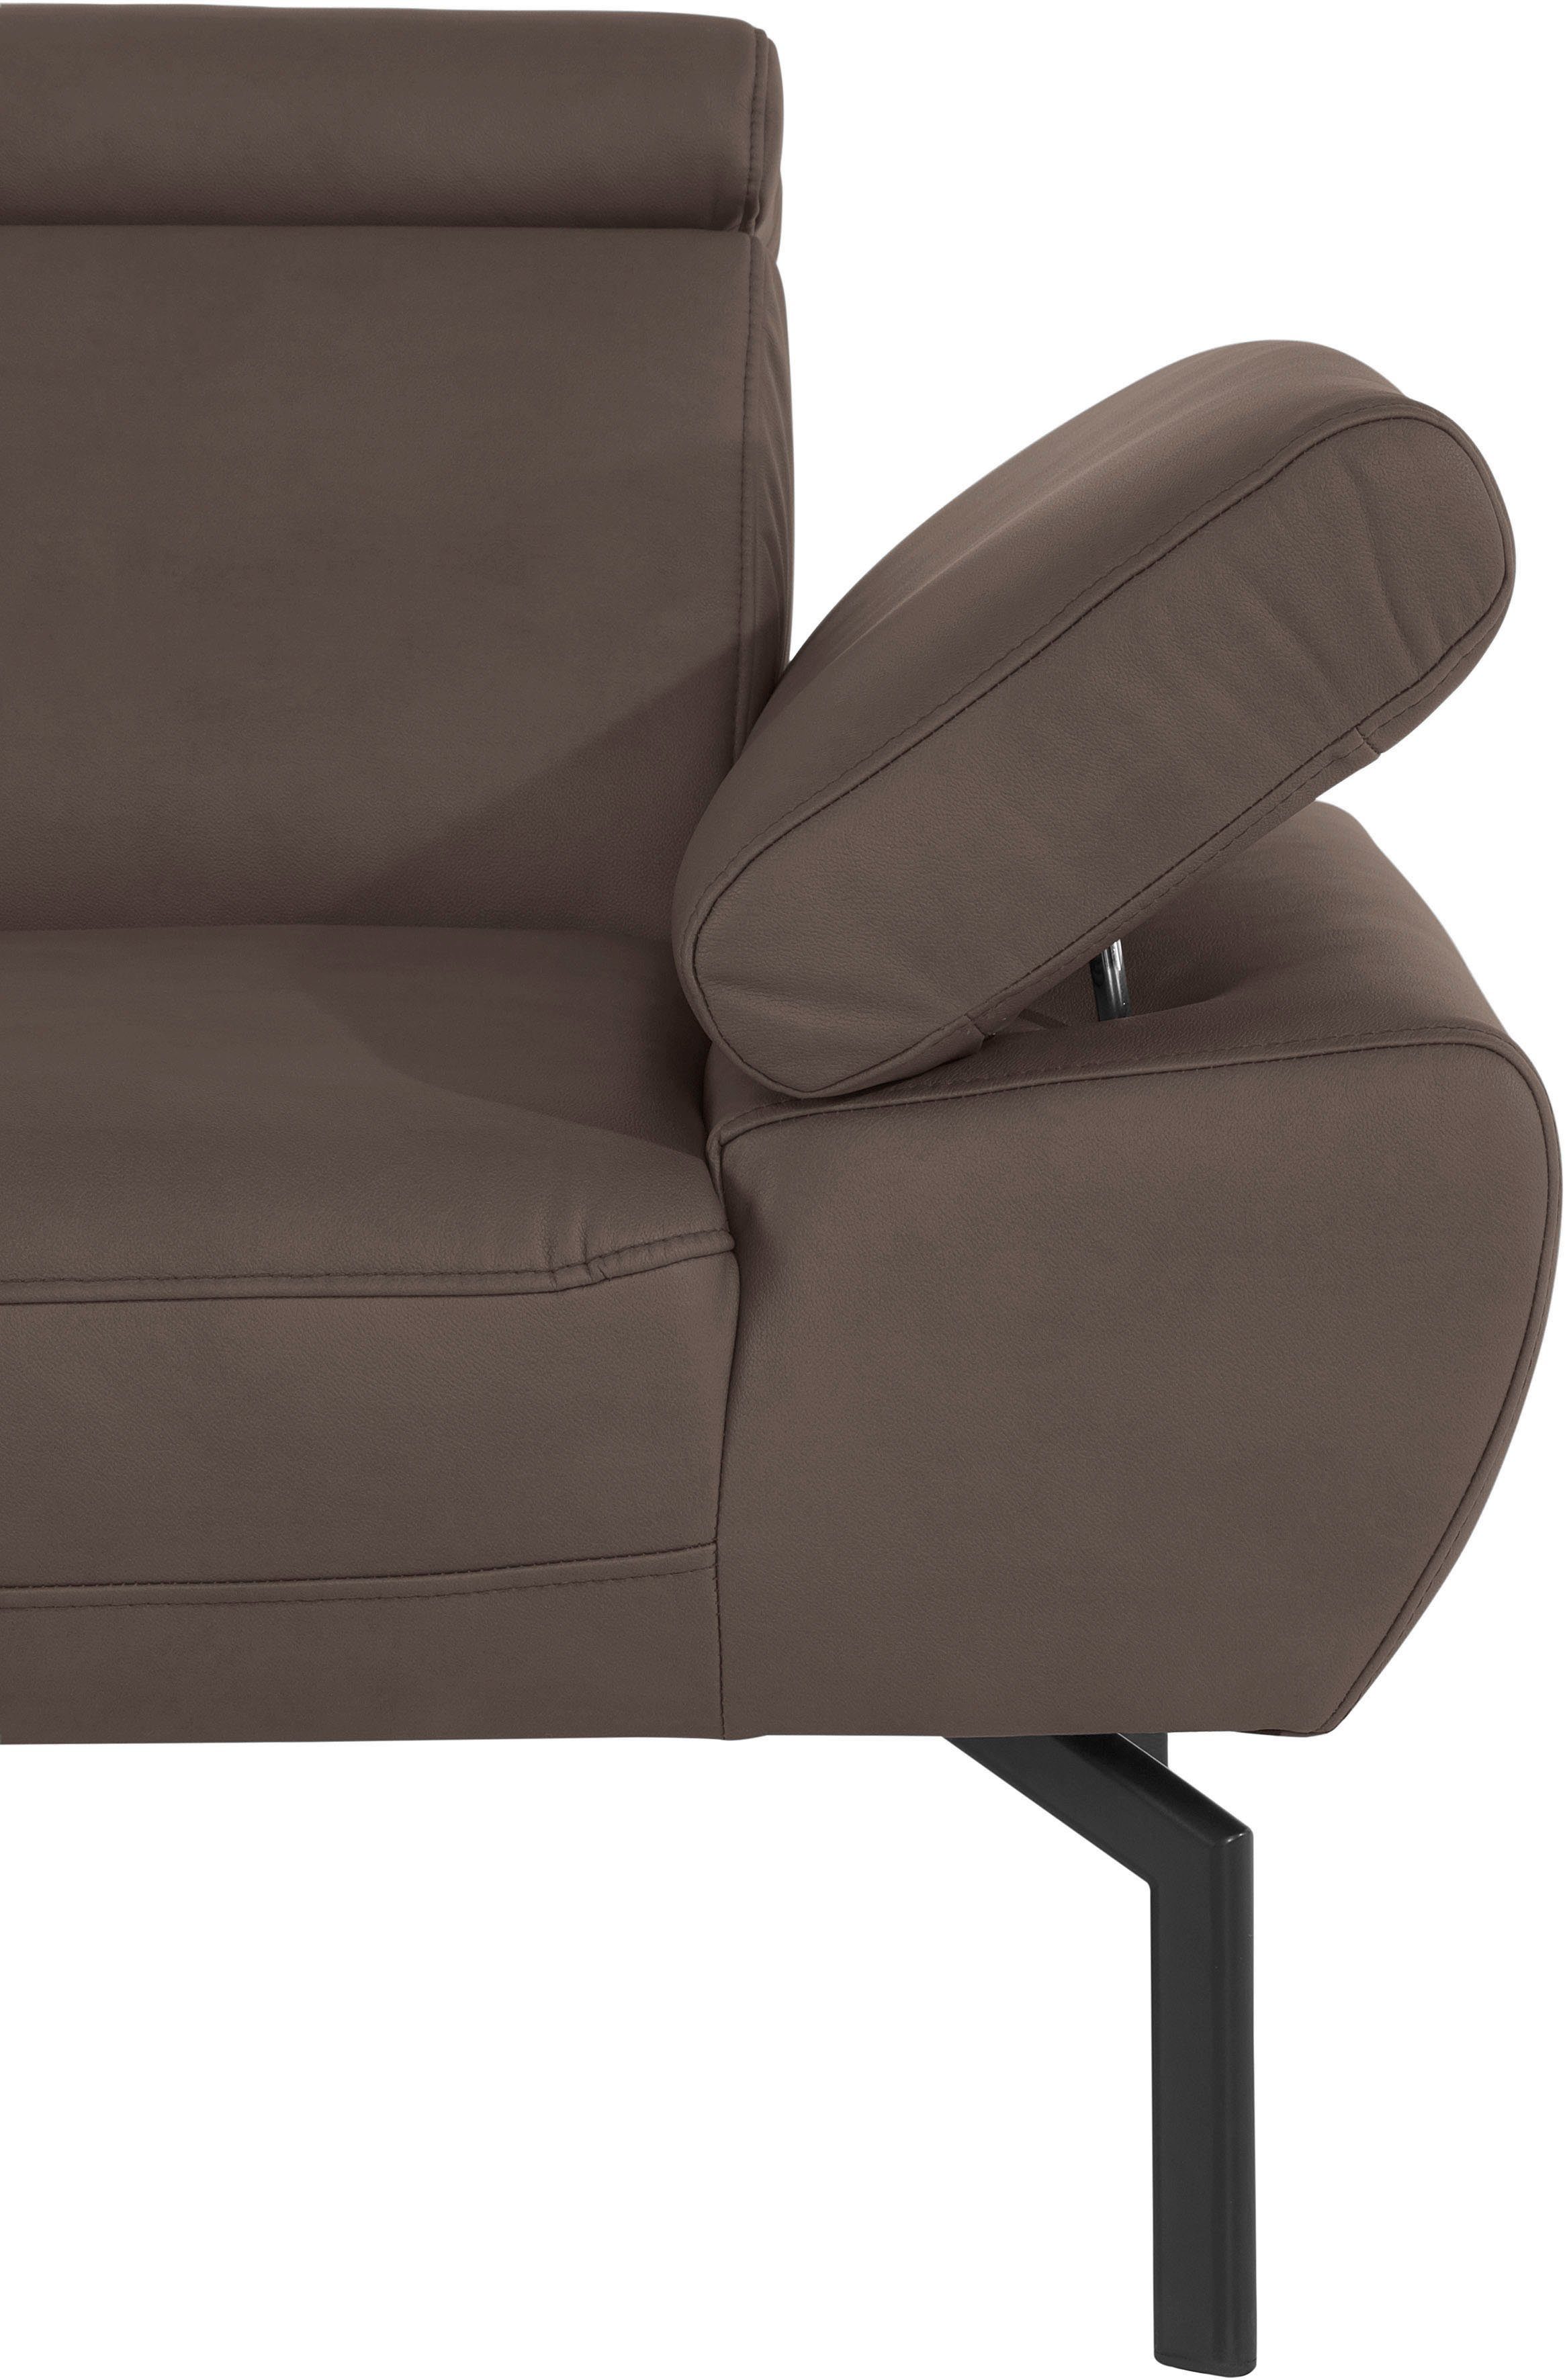 of Places Luxus-Microfaser in Rückenverstellung, 2,5-Sitzer mit Style Trapino Luxus, Lederoptik wahlweise